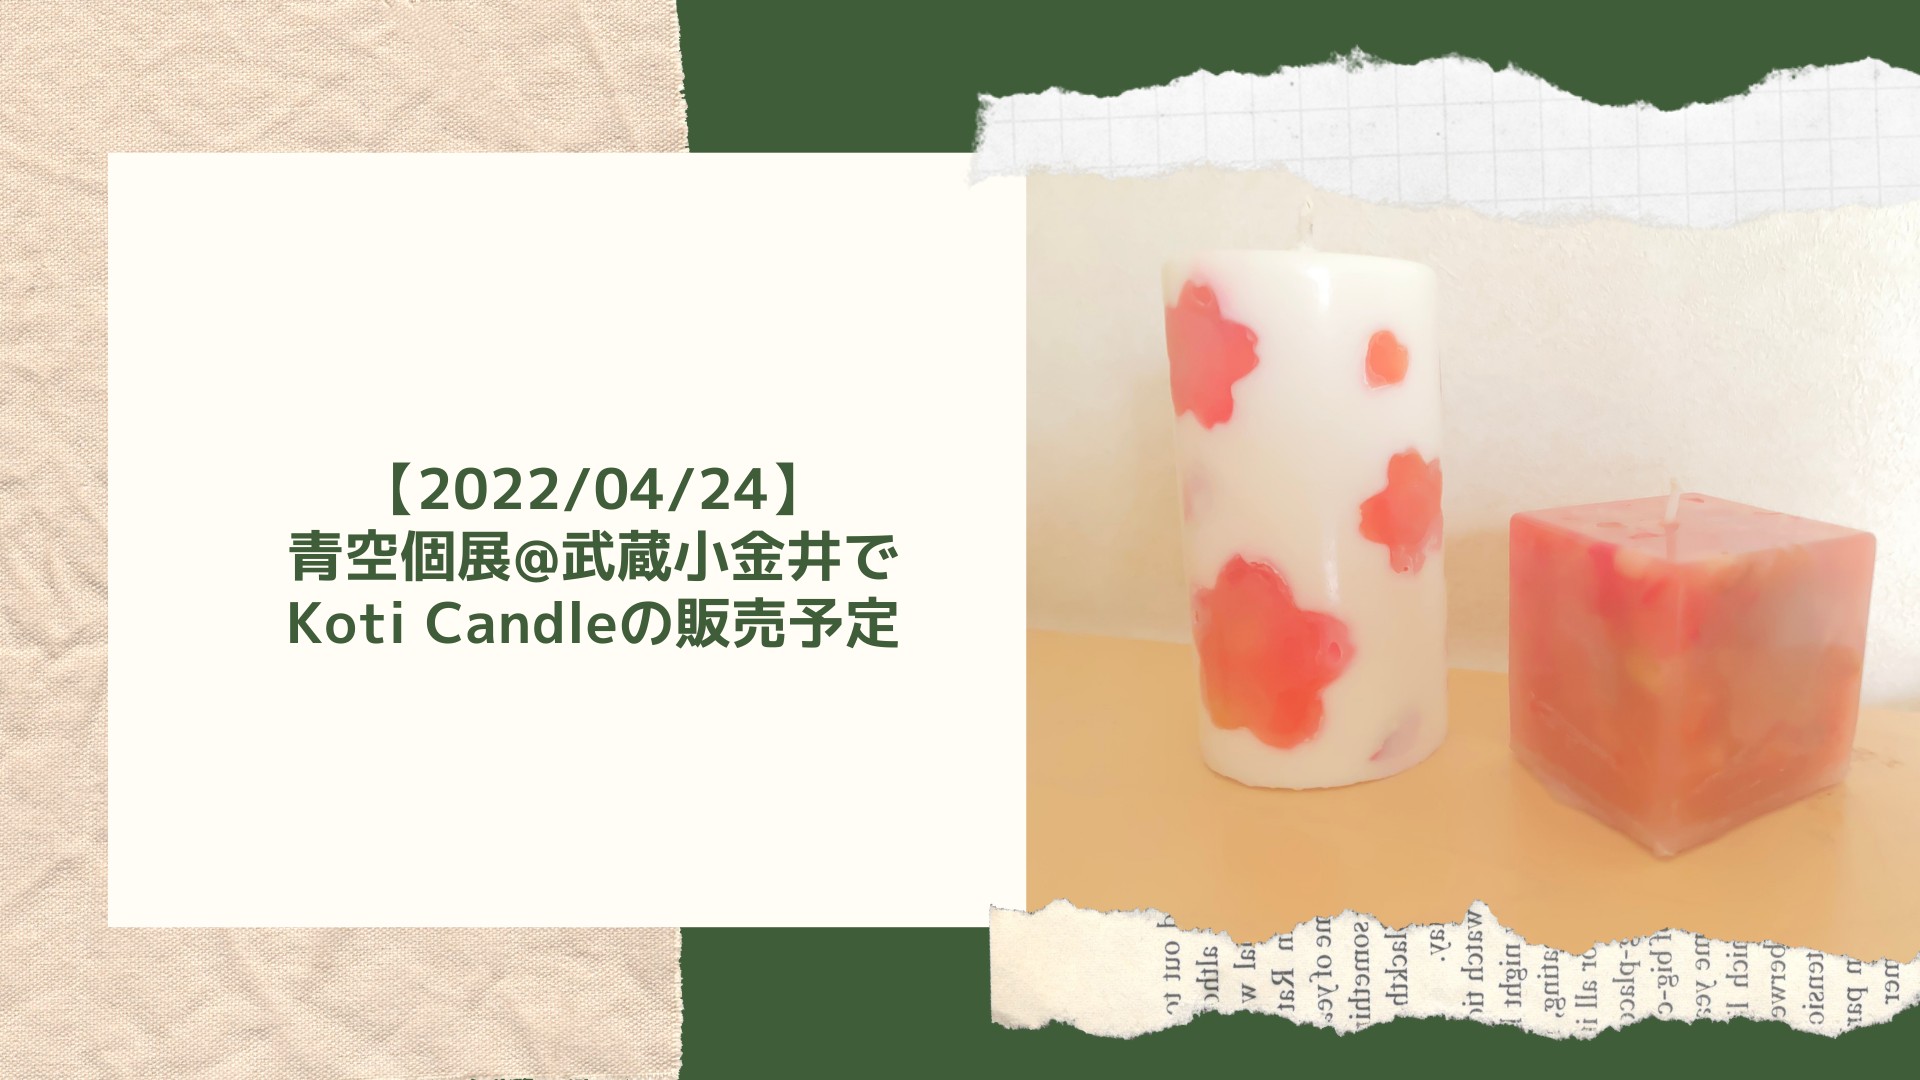 【2022/04/24】青空個展@武蔵小金井でKoti Candleの販売予定